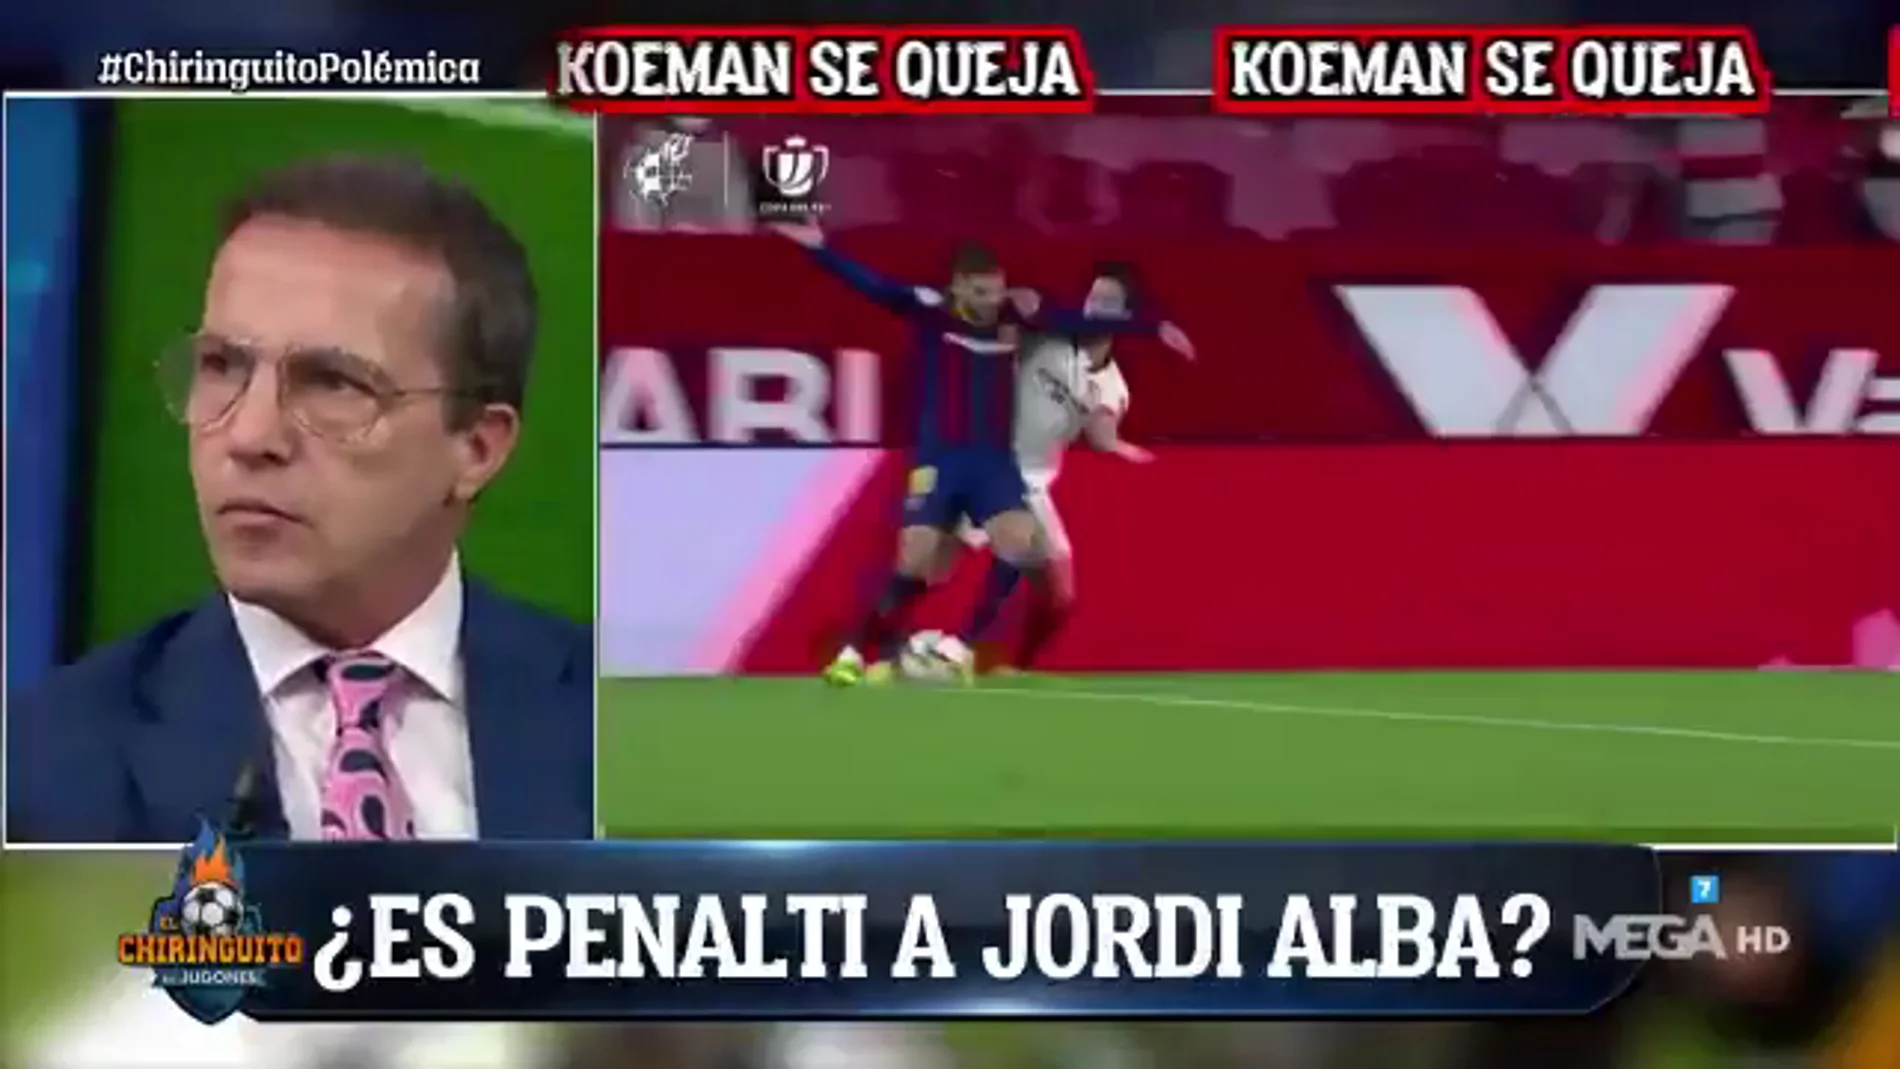 Cristóbal Soria, sobre el posible penalti de Suso a Jordi Alba: "No es ni falta"